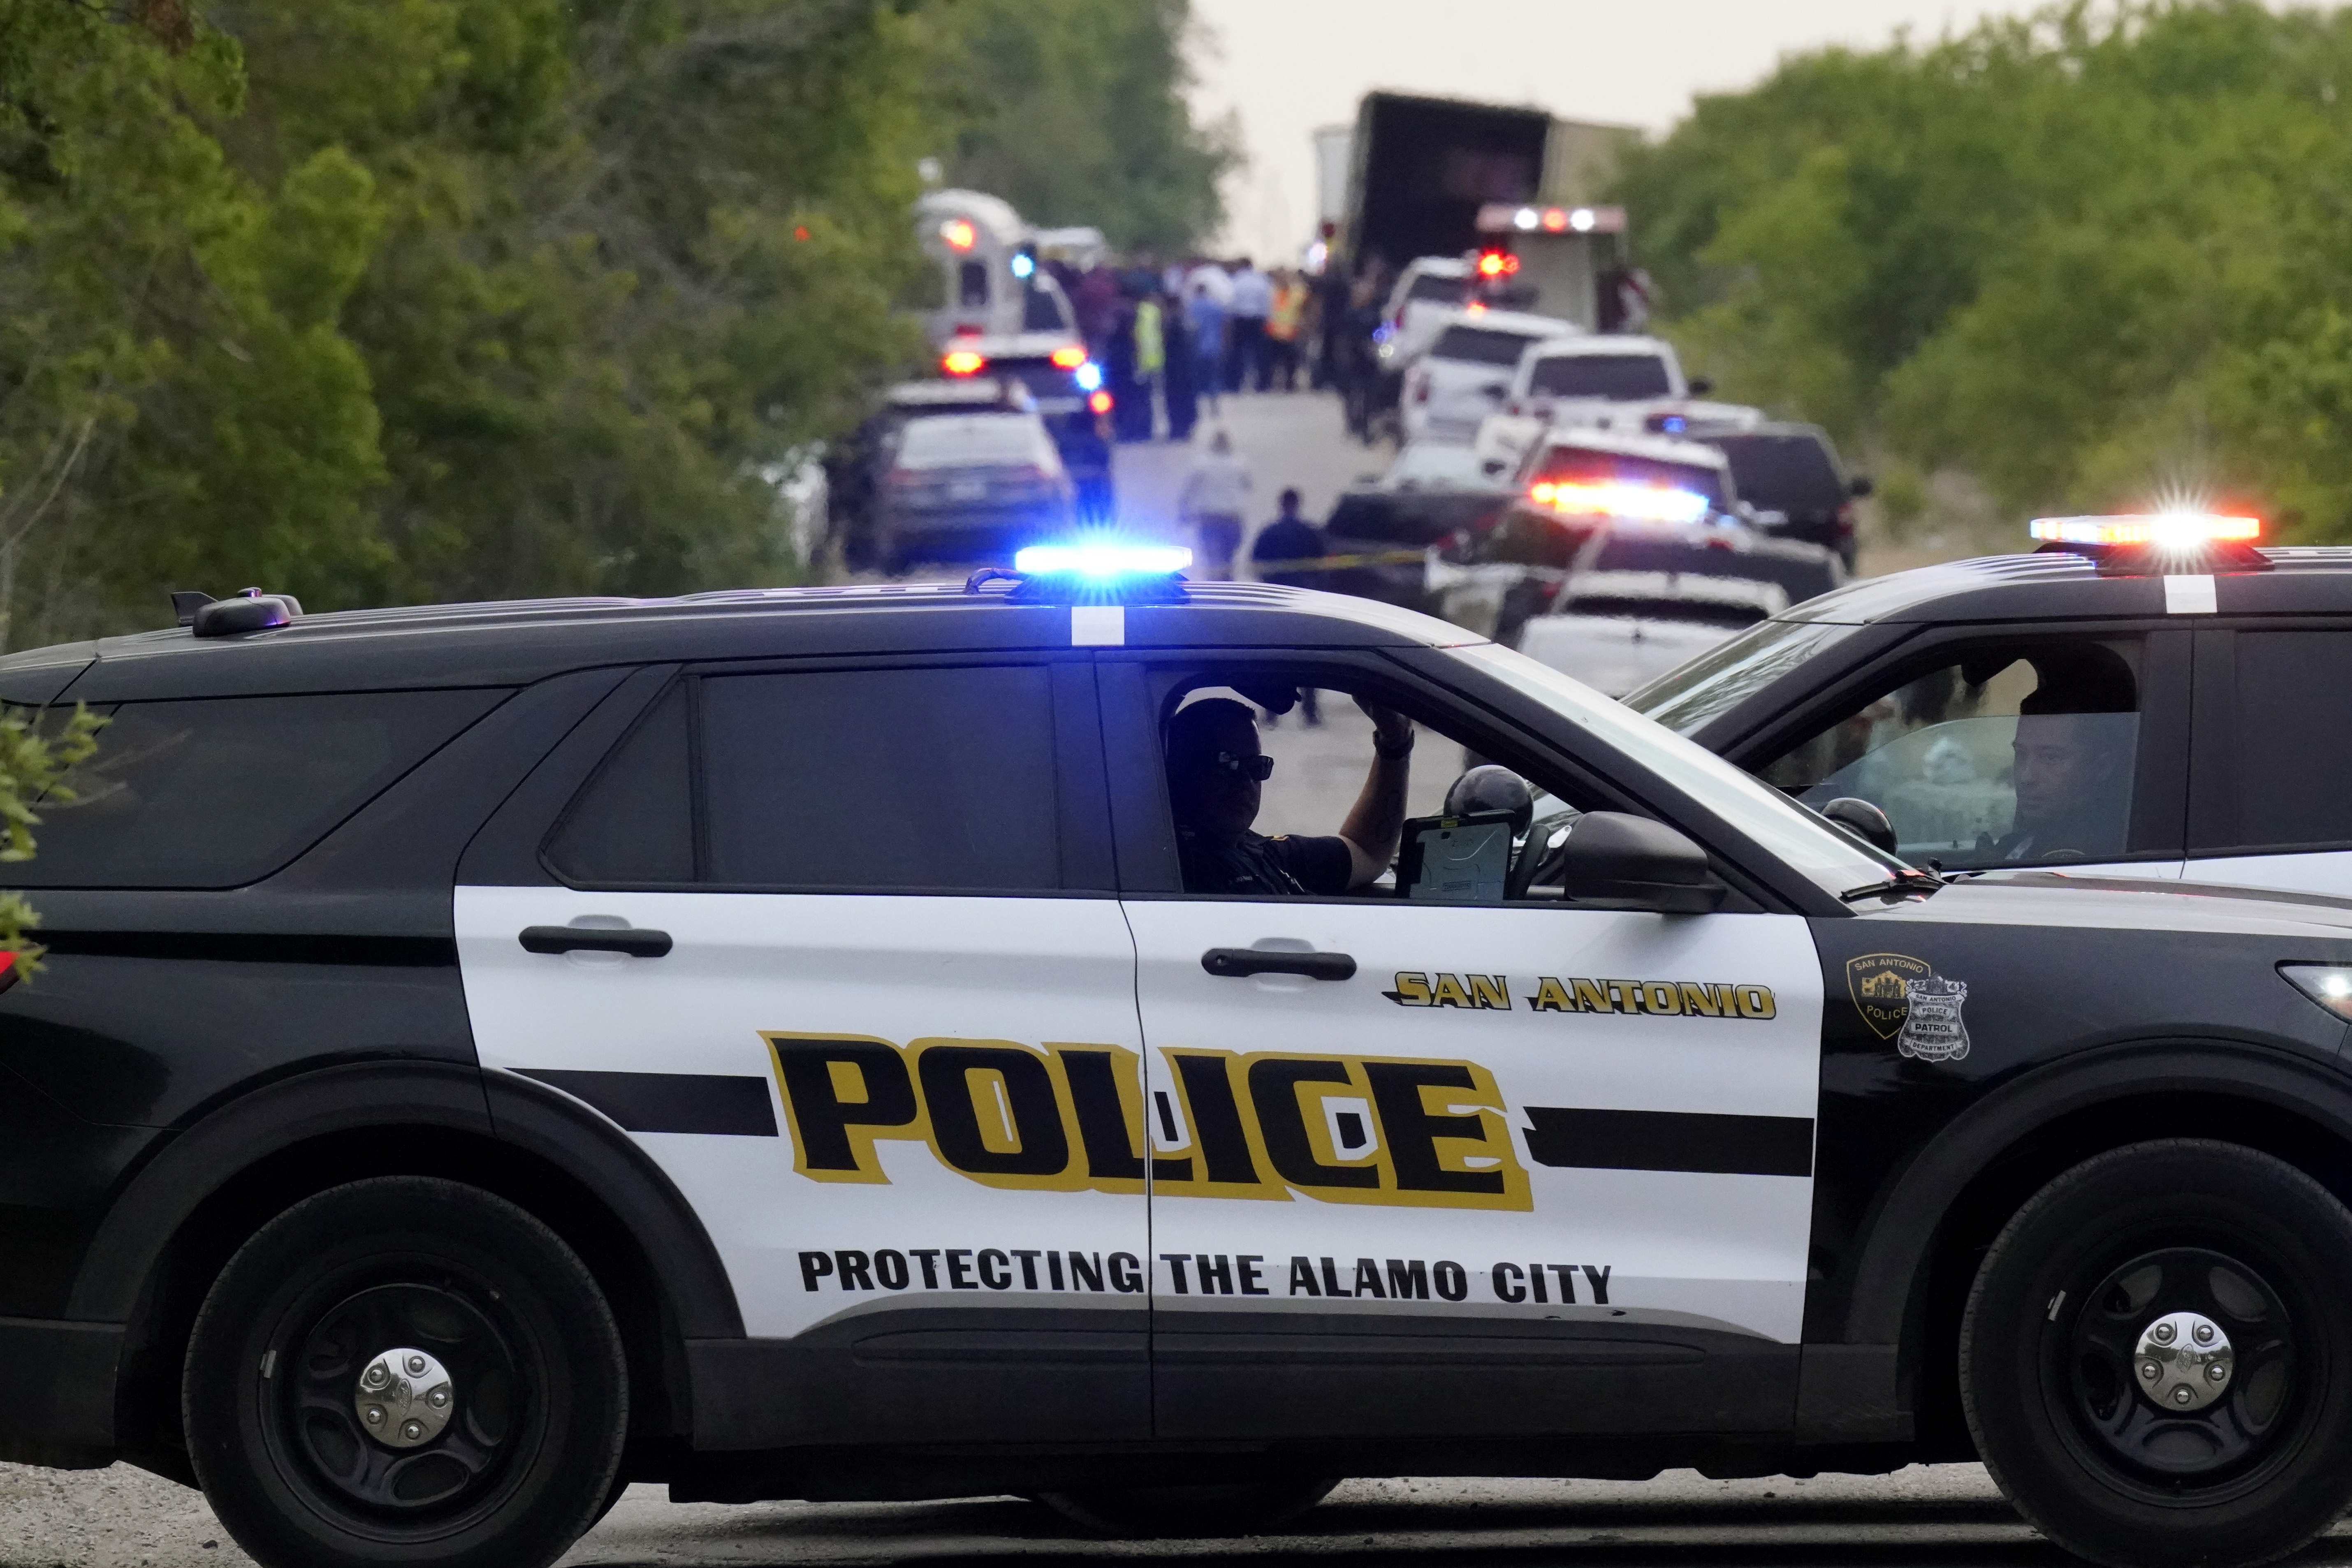 La policía bloquea la escena donde se descubrió un semirremolque con múltiples cadáveres en San Antonio.